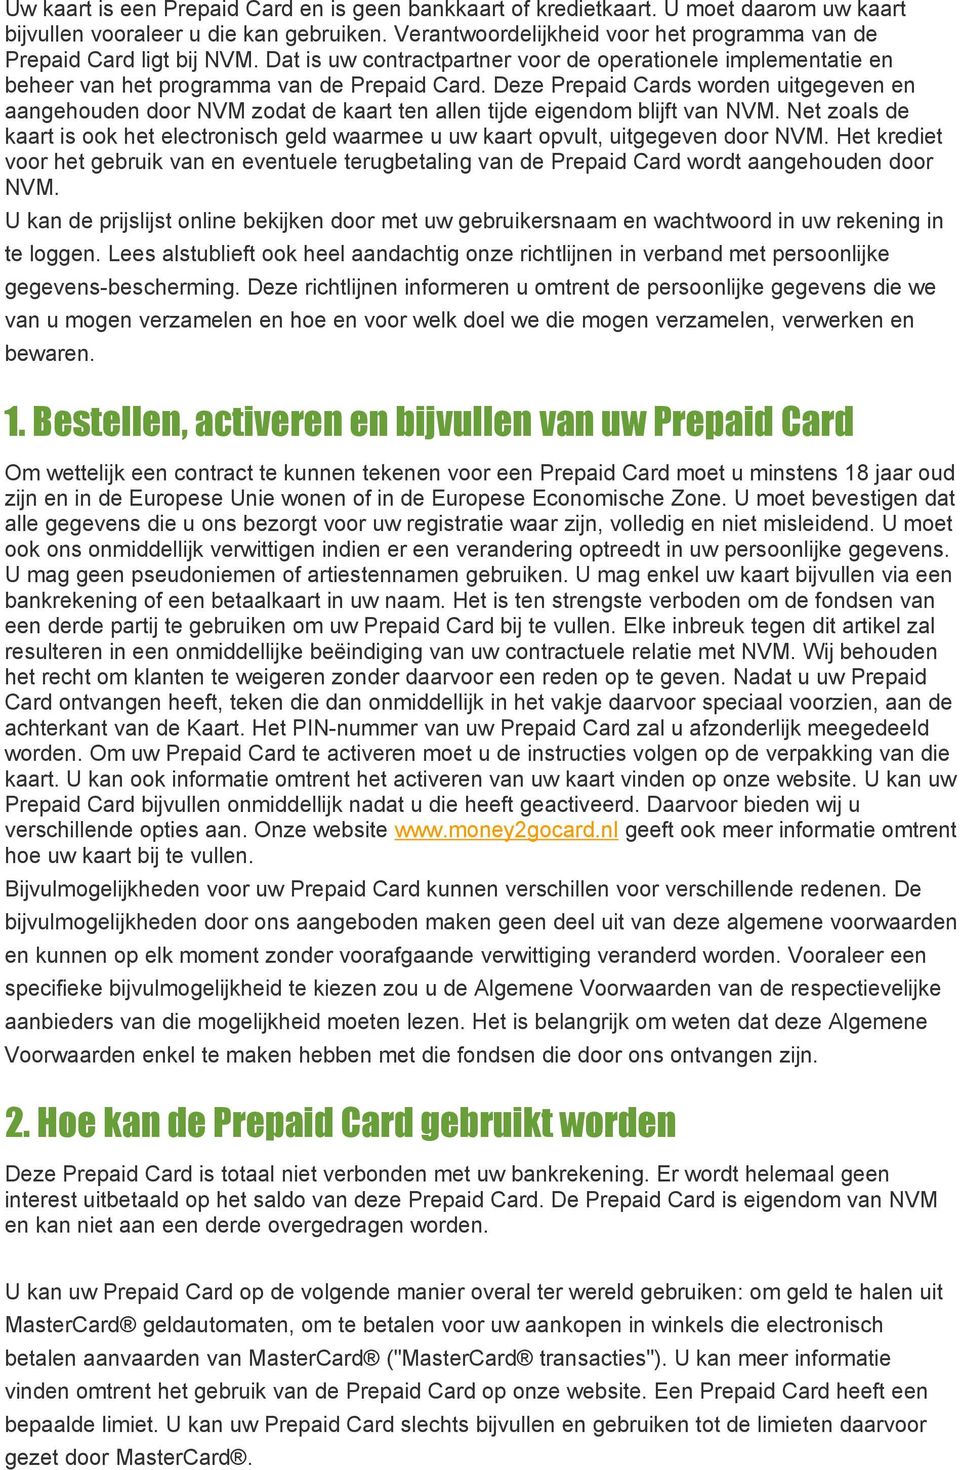 Deze Prepaid Cards worden uitgegeven en aangehouden door NVM zodat de kaart ten allen tijde eigendom blijft van NVM.